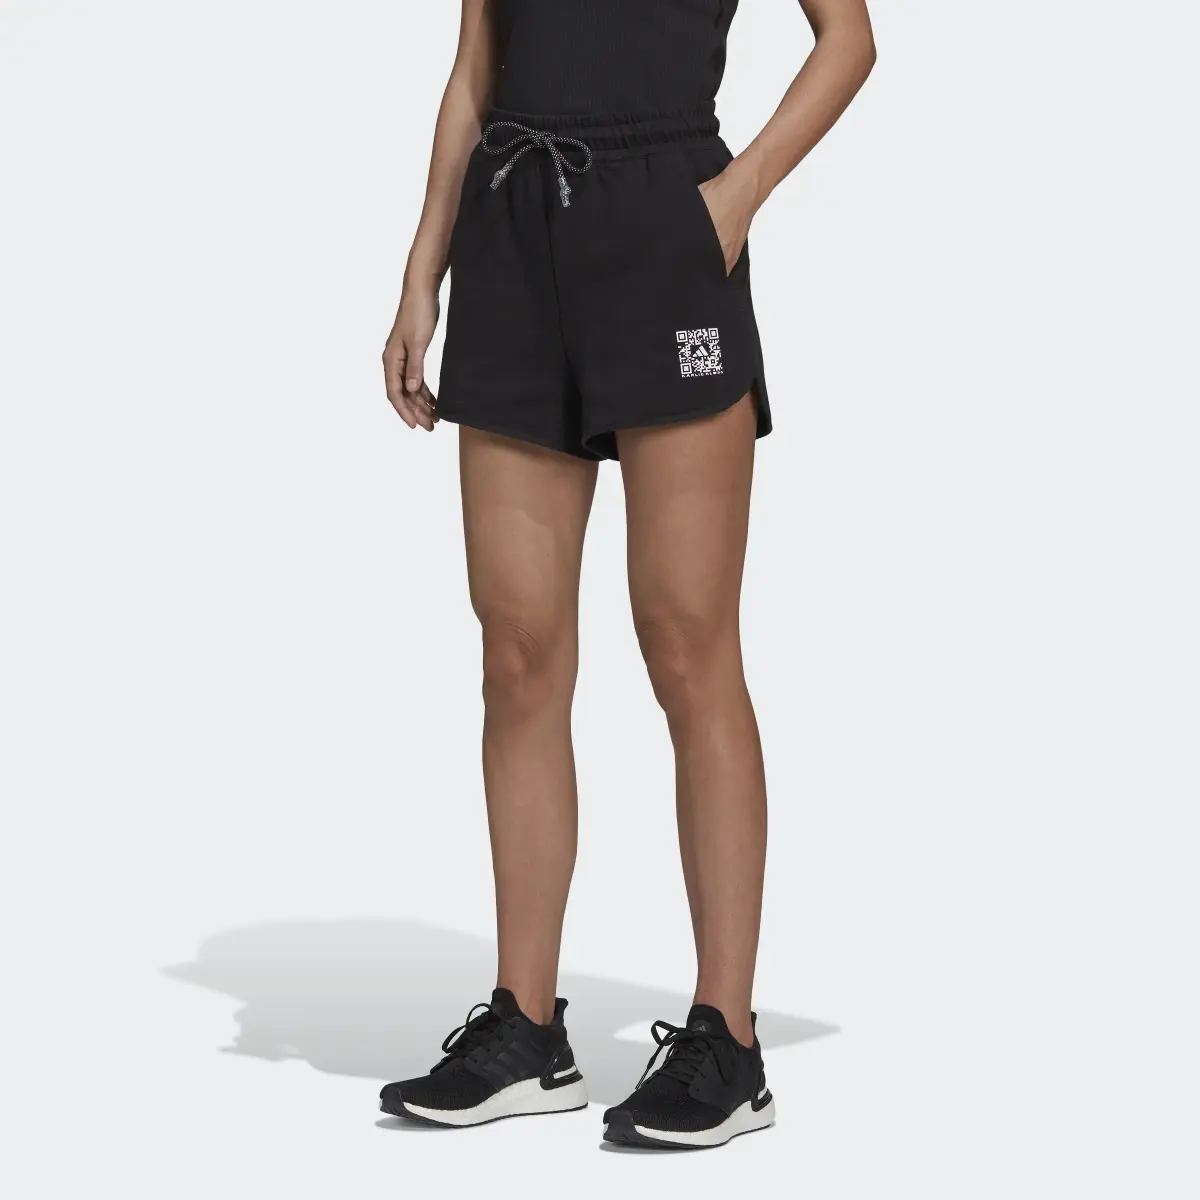 Adidas Karlie Kloss x adidas Shorts. 1